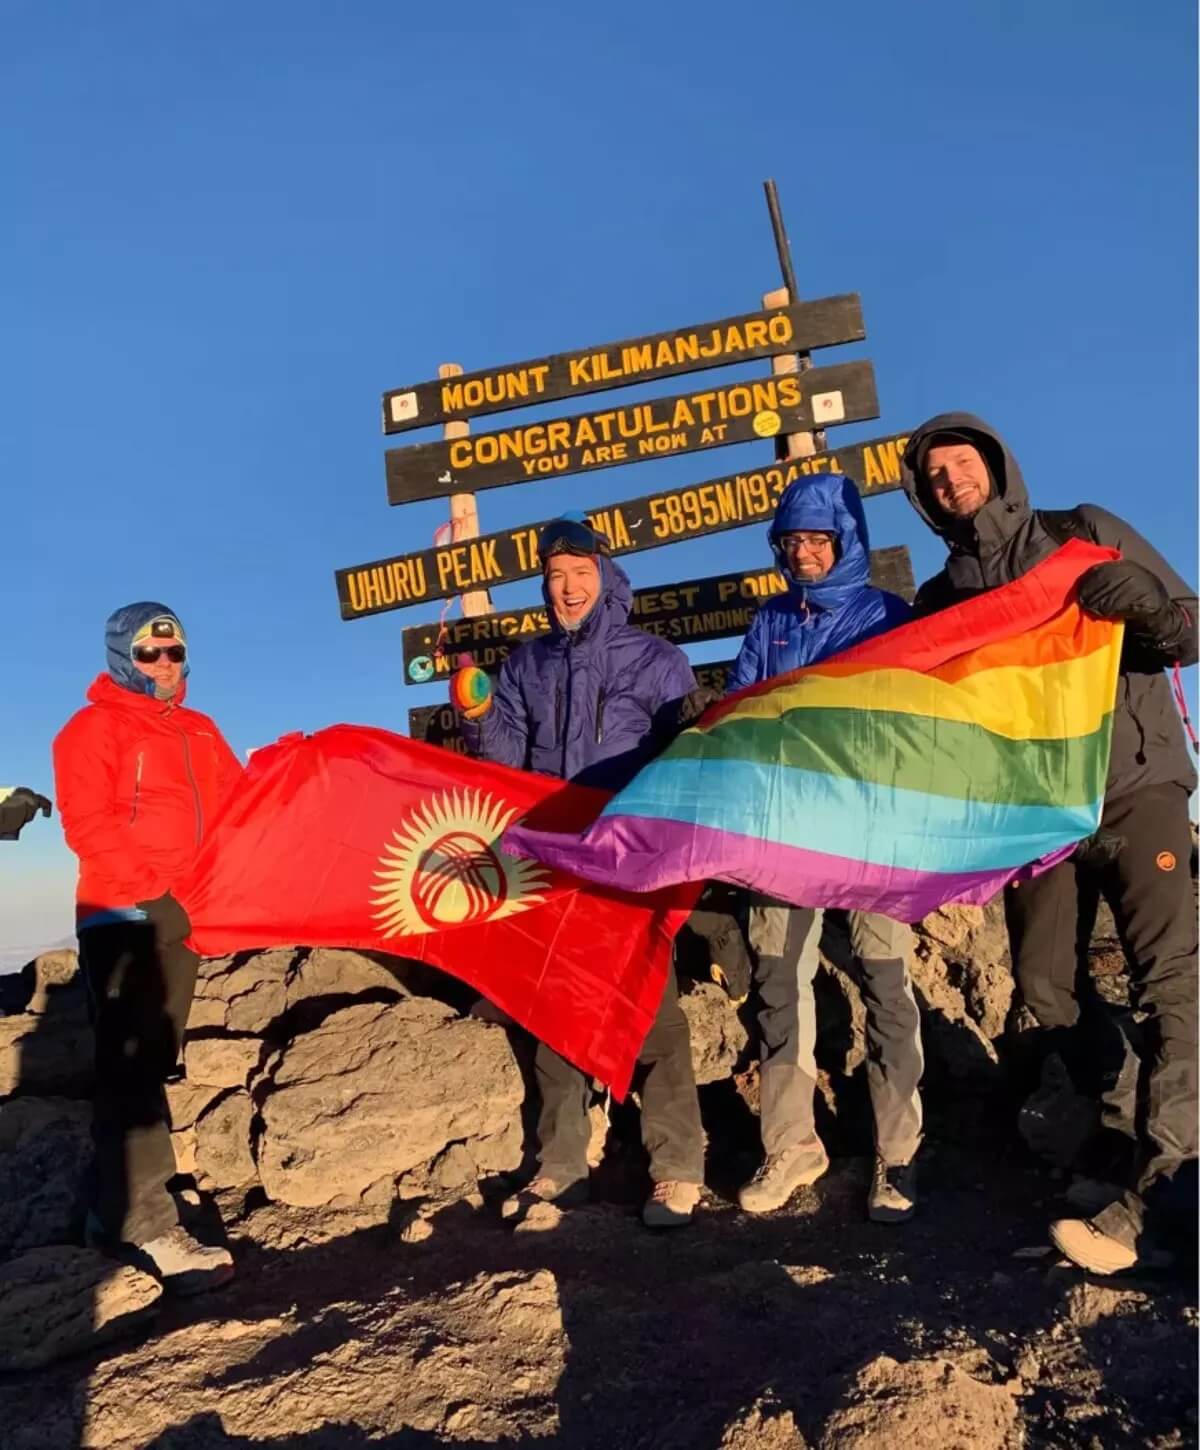 Scalatori gay issano bandiera rainbow sulla cima della montagna di Vladimir Putin - Scalatori gay issano bandiera rainbow sulla cima della montagna di Vladimir Putin 3 - Gay.it